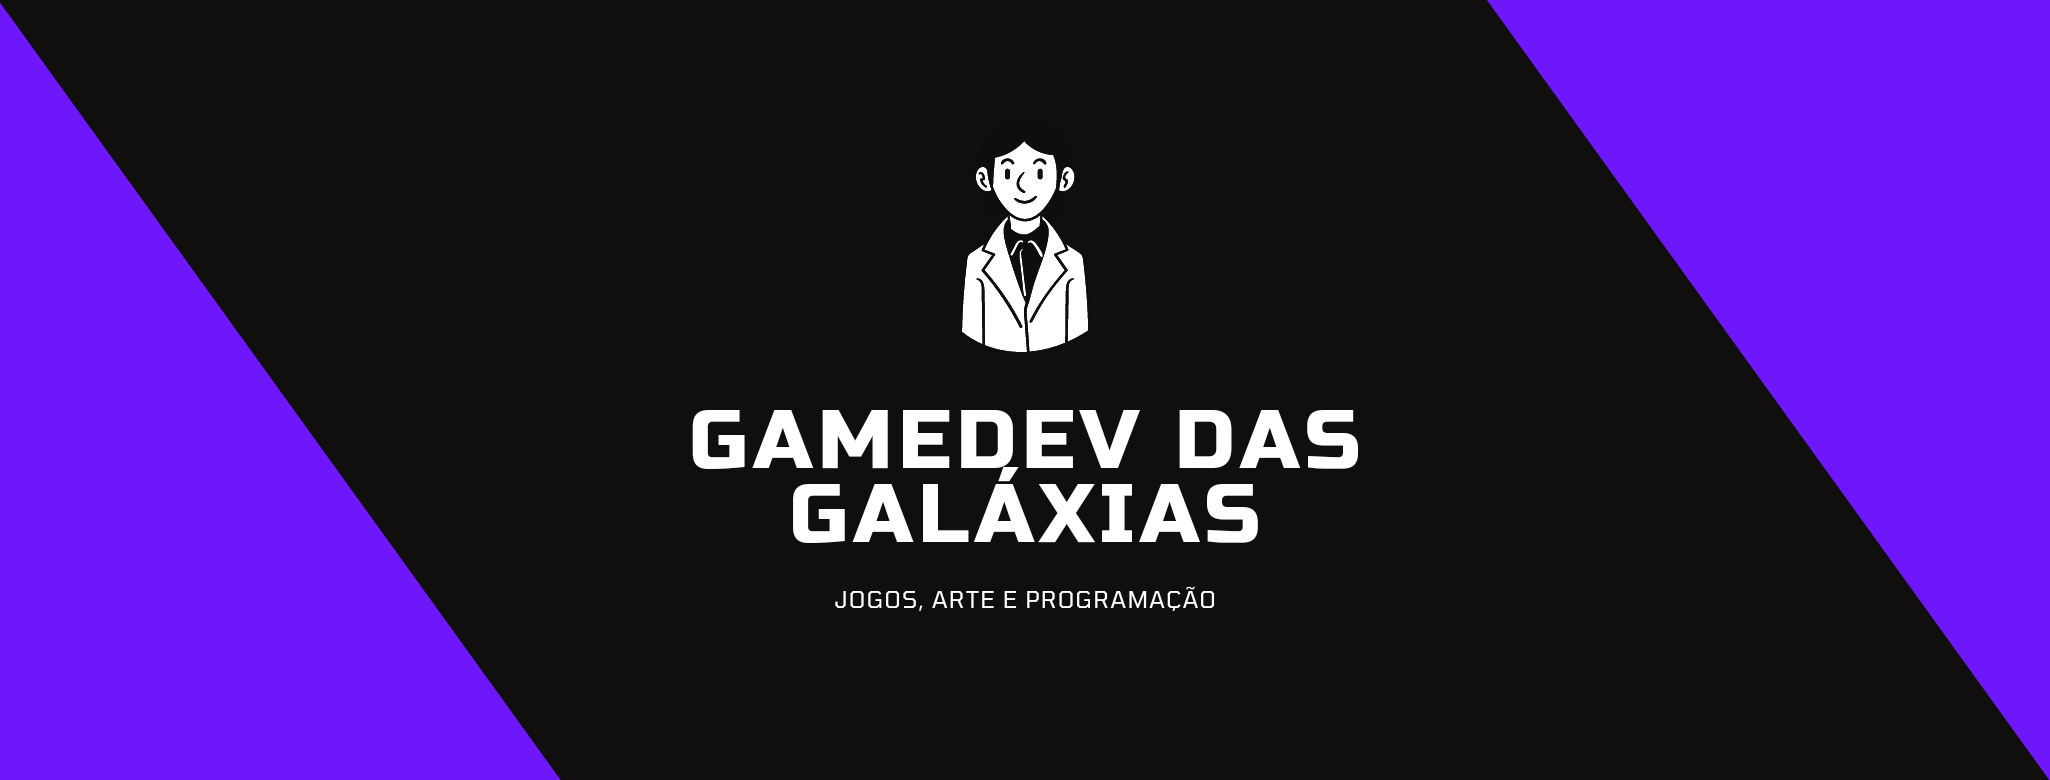 Capa do site GameDev-Das-Galaxias